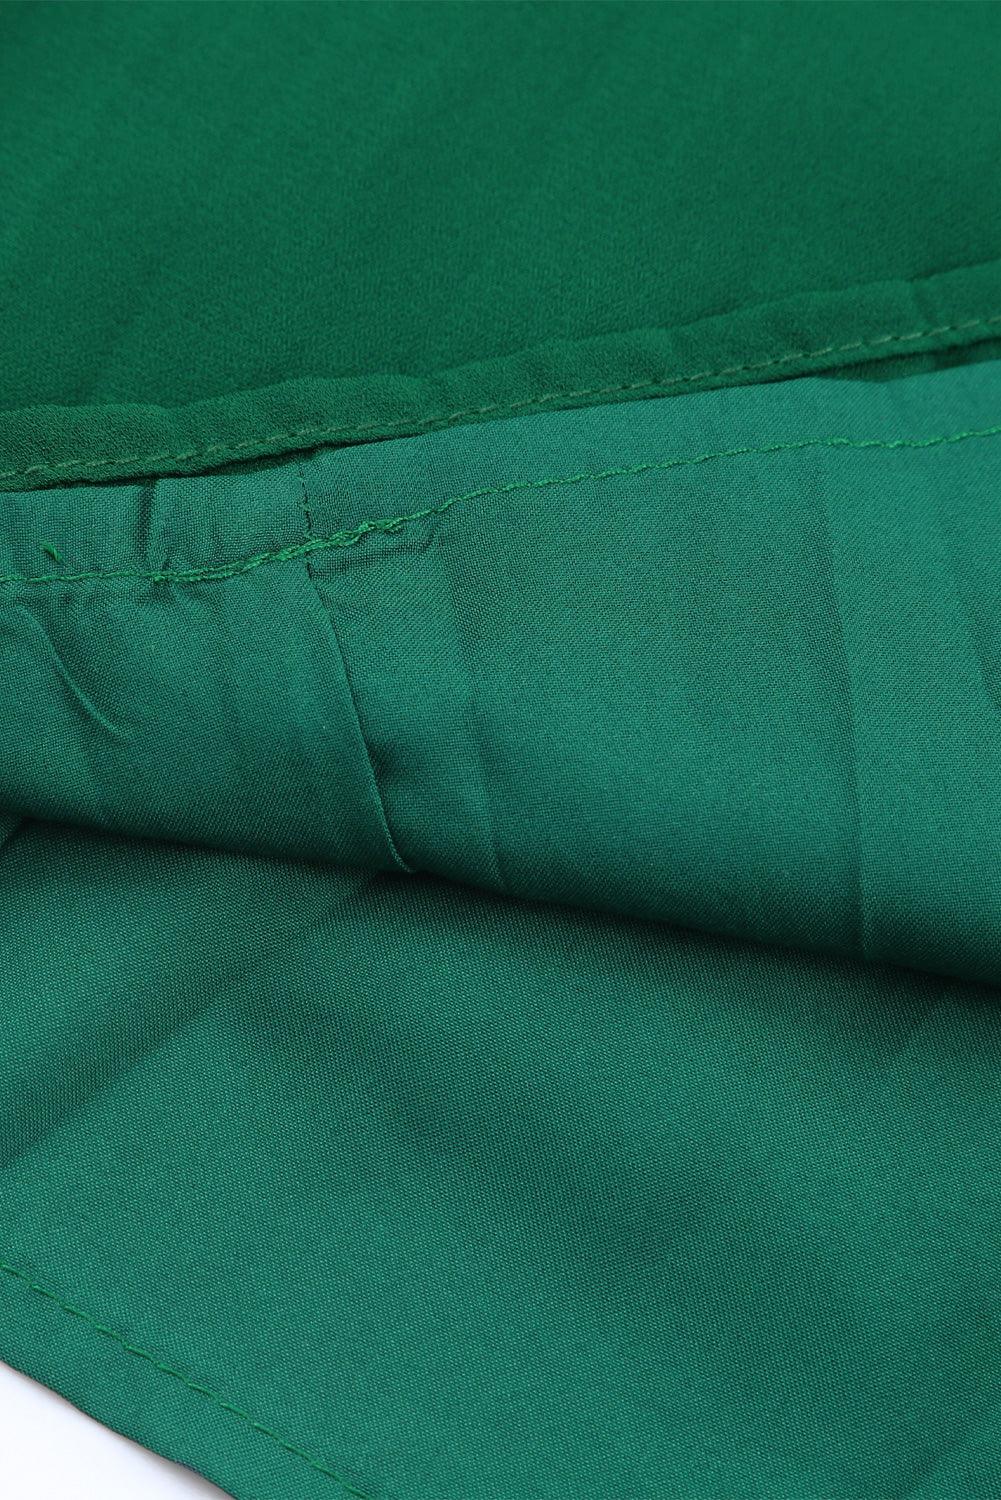 Green Elegant Halter Neck Belted Pleated Wide Leg Jumpsuit - Vesteeto